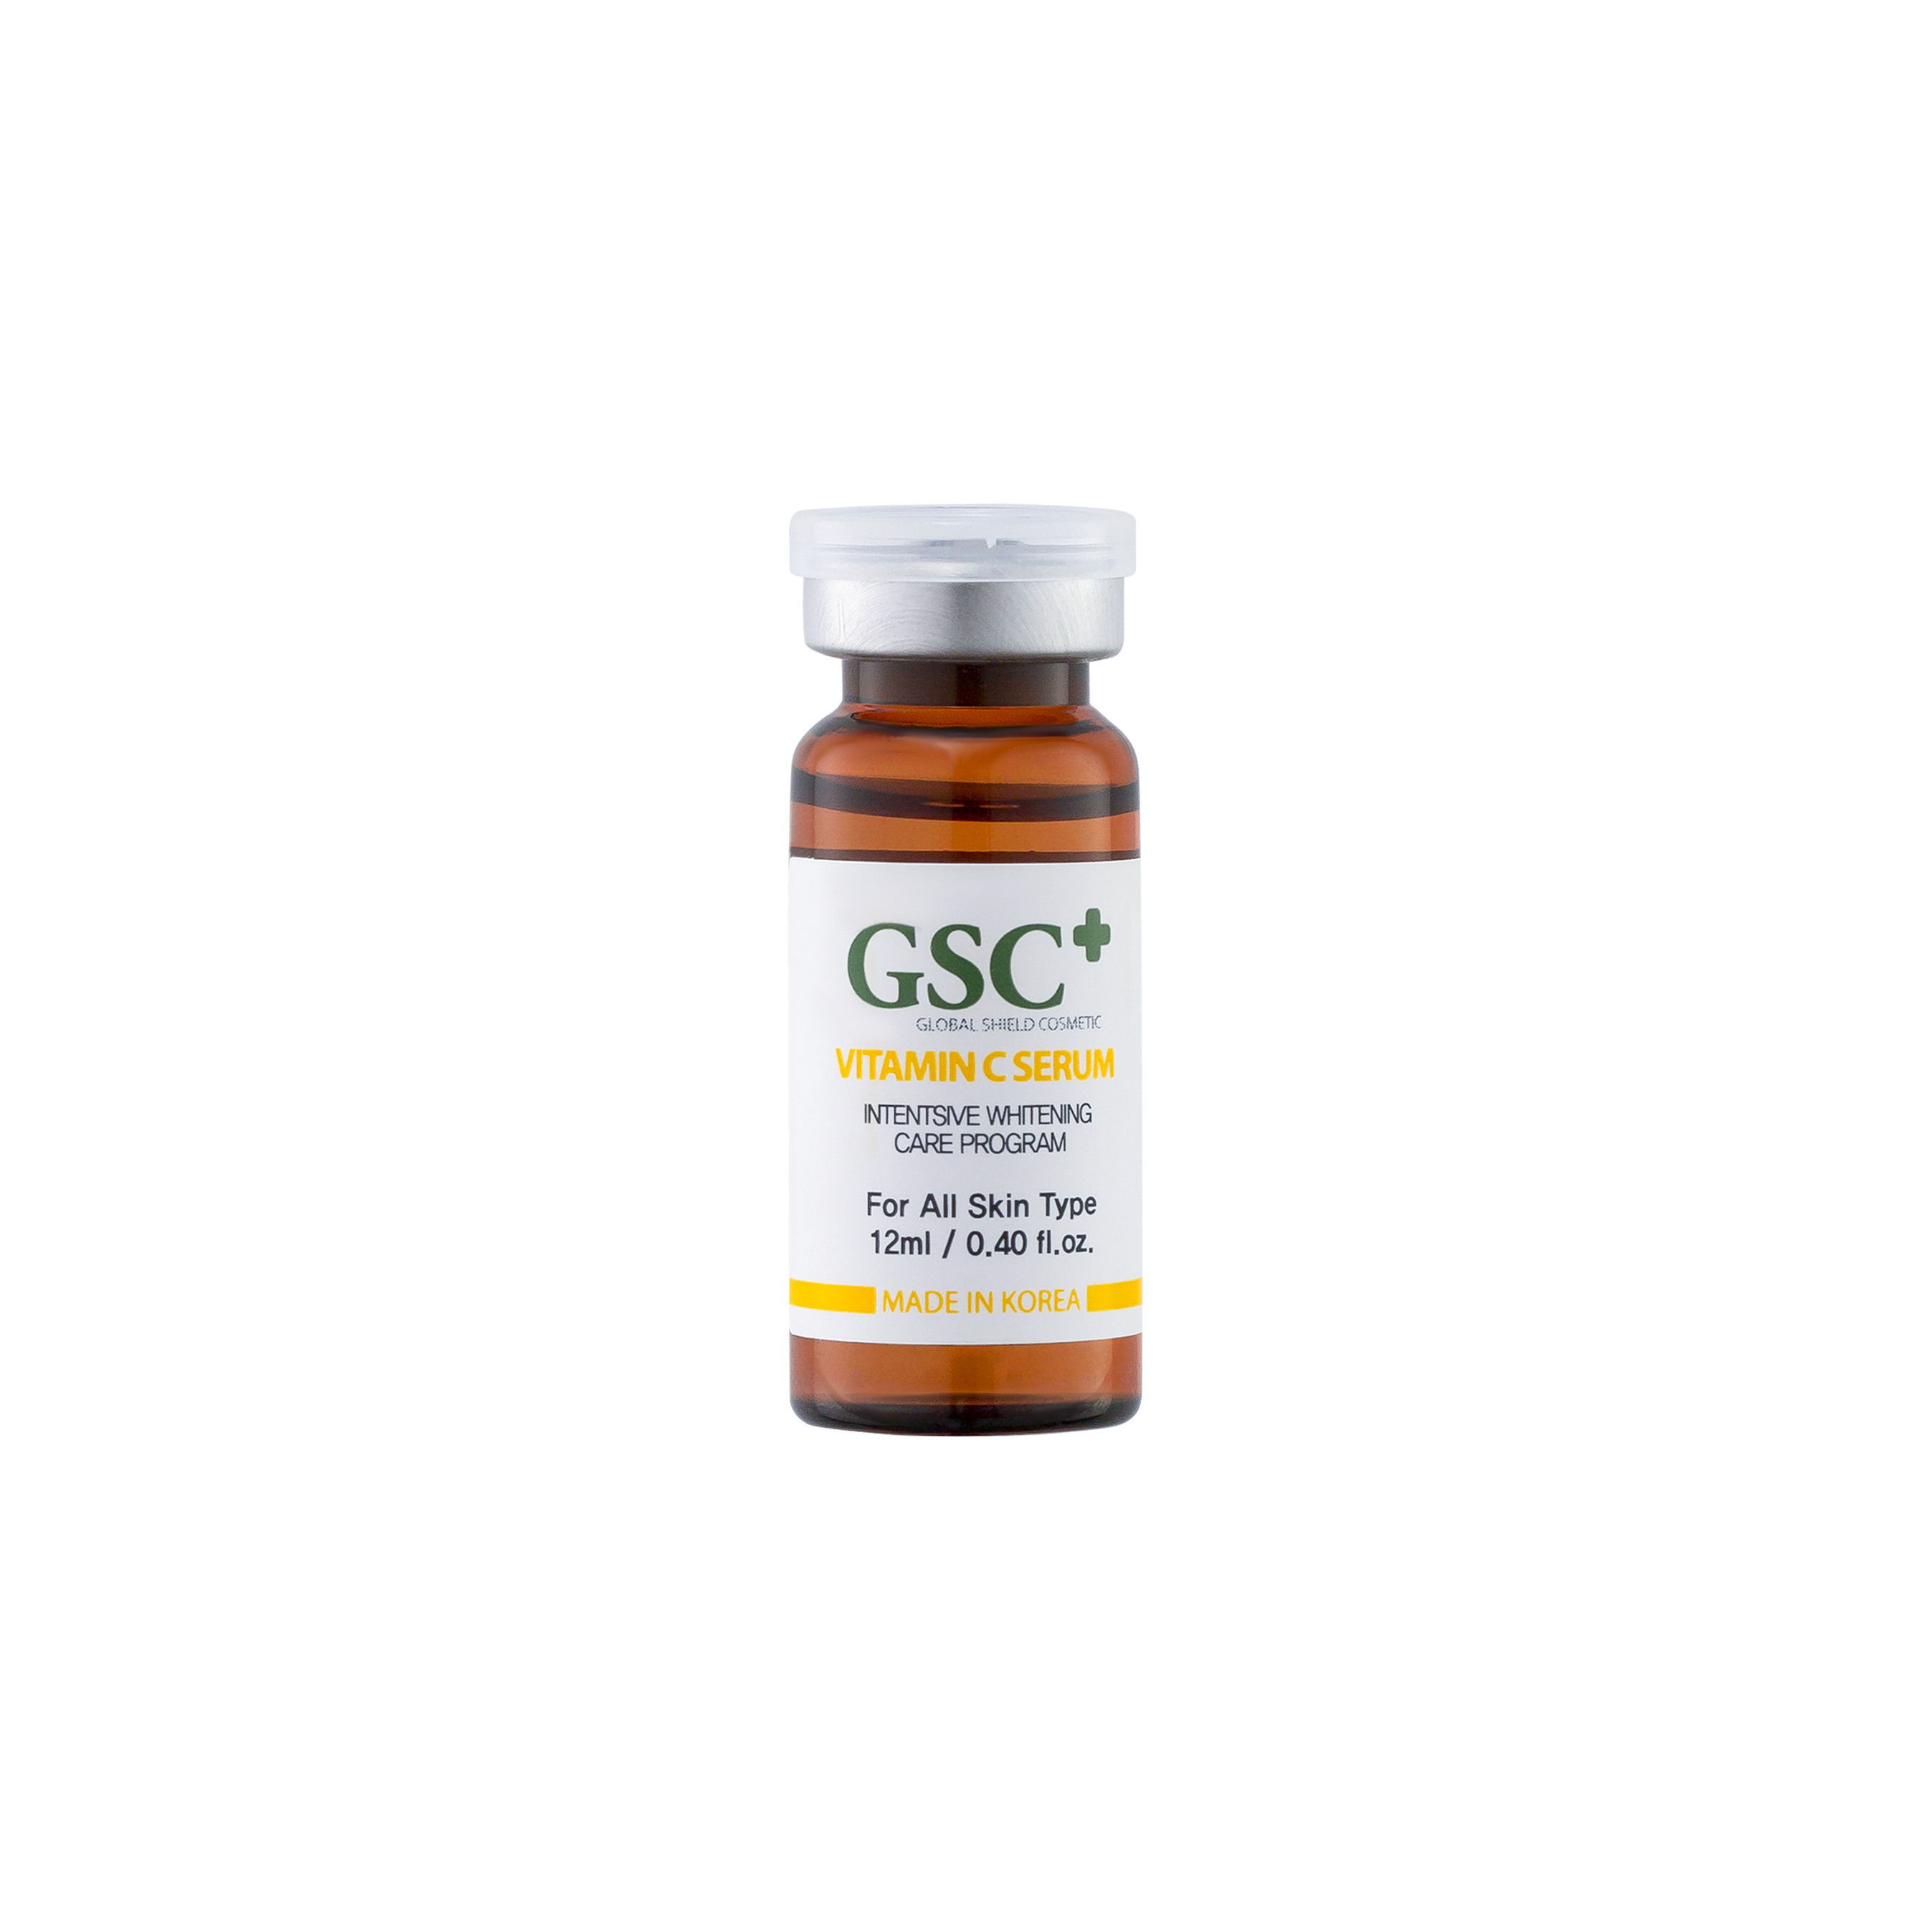 Tinh Chất GSC Vitamin C Serum - Dạng Tinh Chất 12ml - Cung Cấp Vitamin C Và Trẻ Hóa Làn Da - Mỹ Phẩm Chính Hãng GSC Nhập Khẩu Hàn Quốc